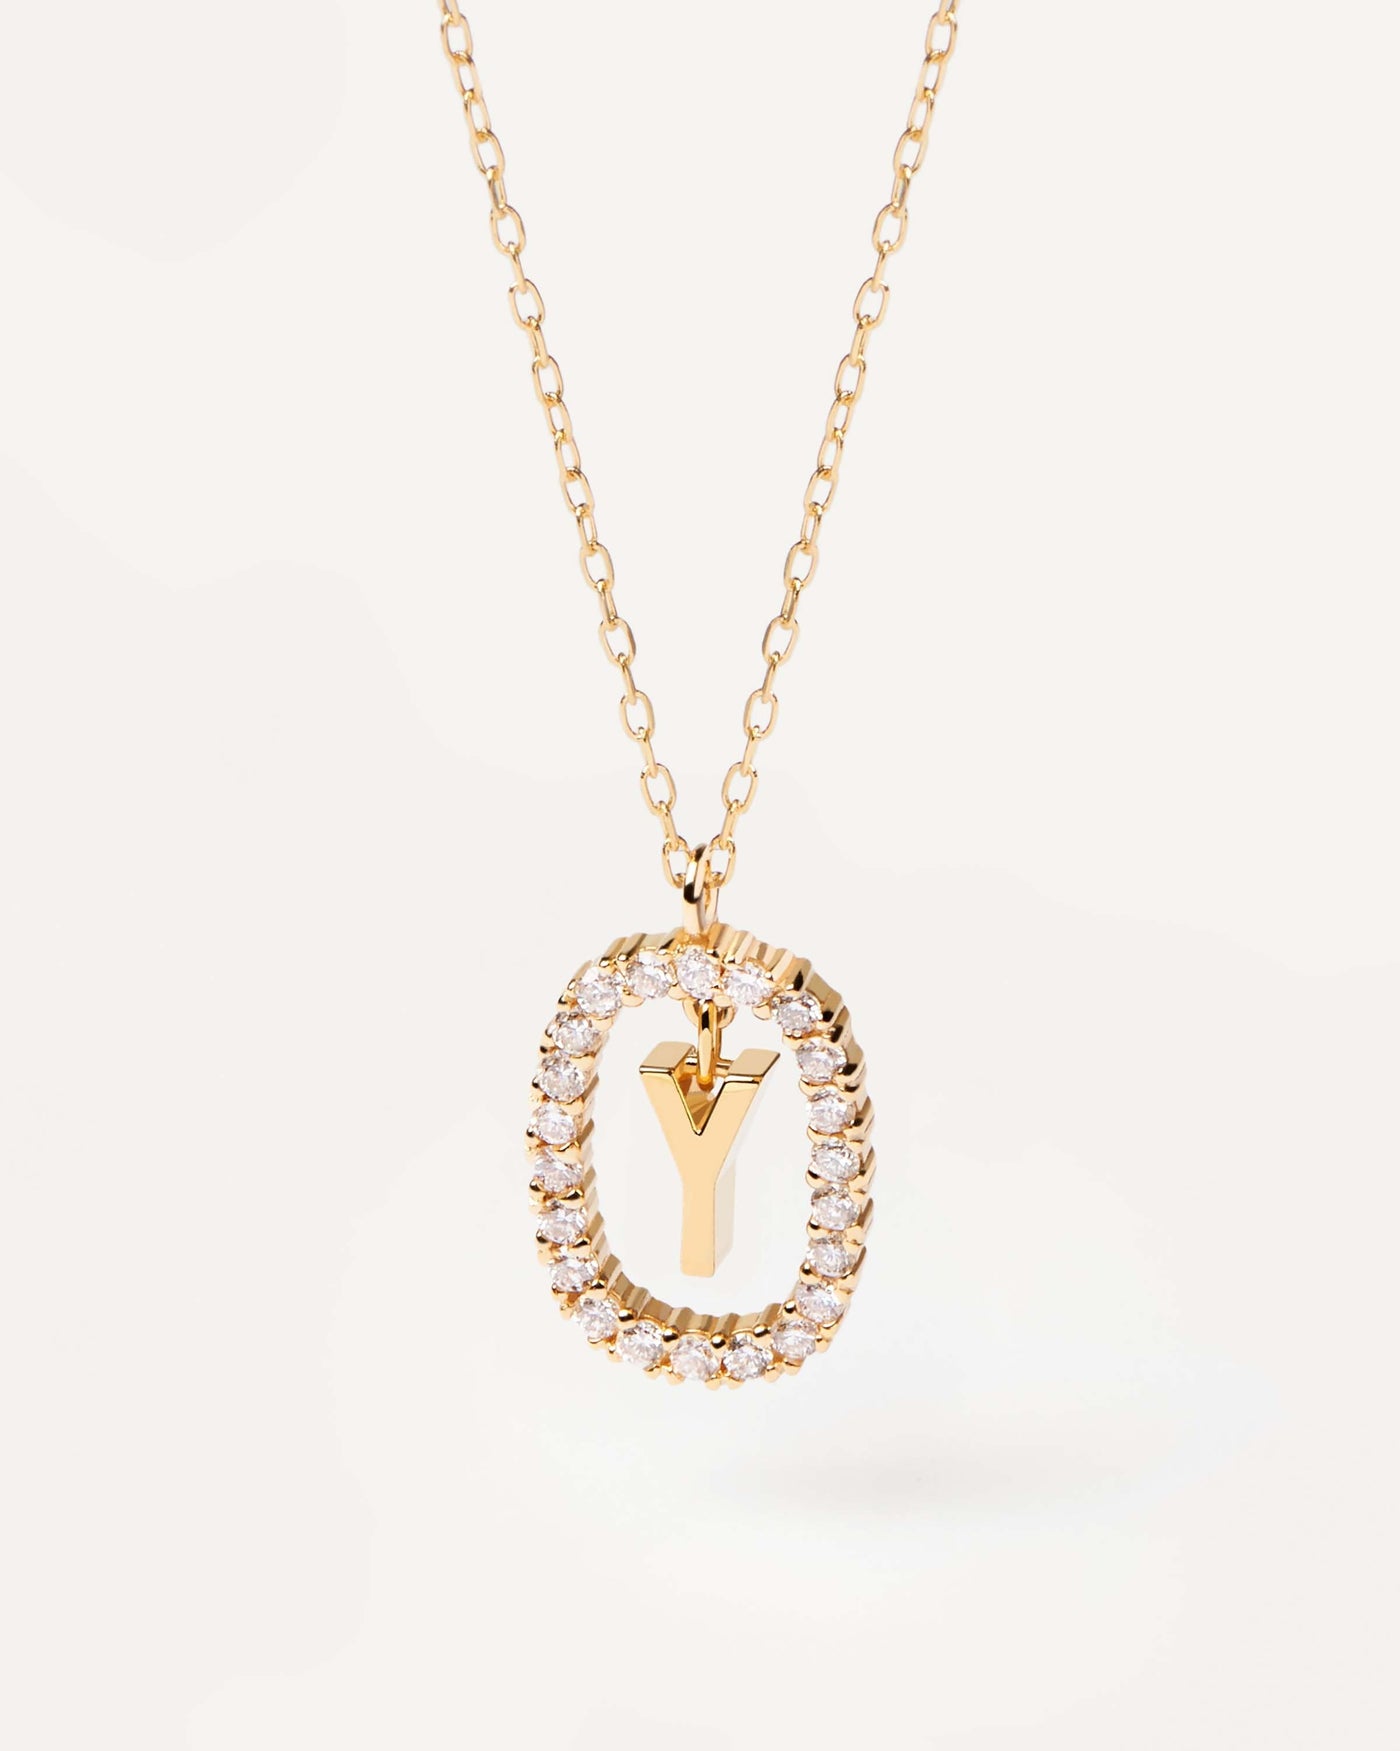 GoldHalskette mit Diamanten Buchstabe Y. Anfangs-Y-Halskette in soliden Gelbgold, umkreist von 0,33 Karat-Labor-Diamanten. Erhalten Sie die neuesten Produkte von PDPAOLA. Geben Sie Ihre Bestellung sicher auf und erhalten Sie diesen Bestseller.